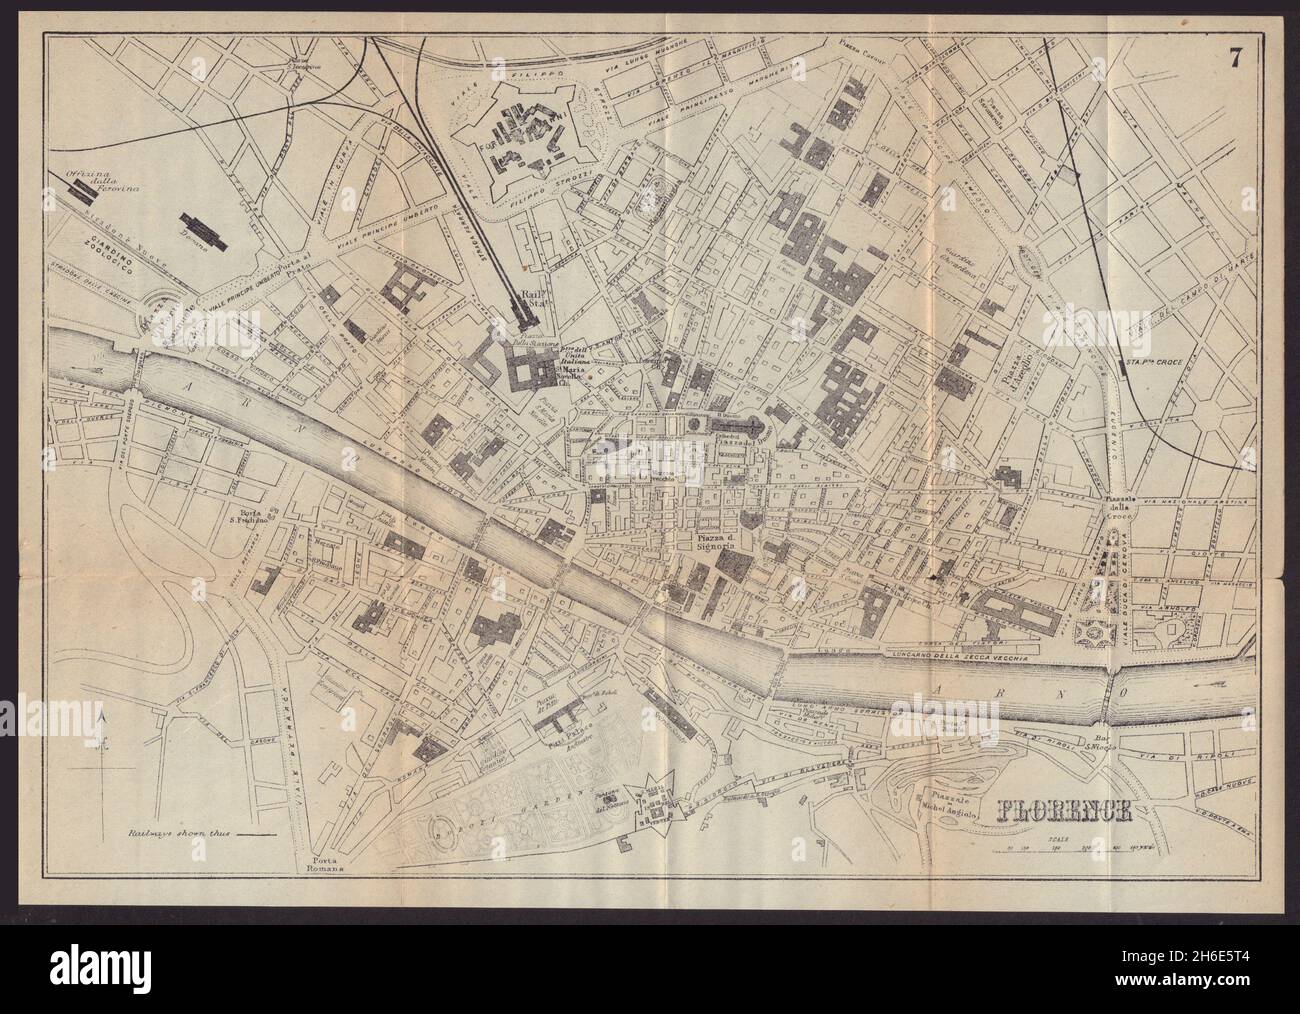 FLORENCIA FLORENCIA FLORENCIA ciudad antigua plan mapa de la ciudad. Italia. BRADSHAW de 1892 años Foto de stock